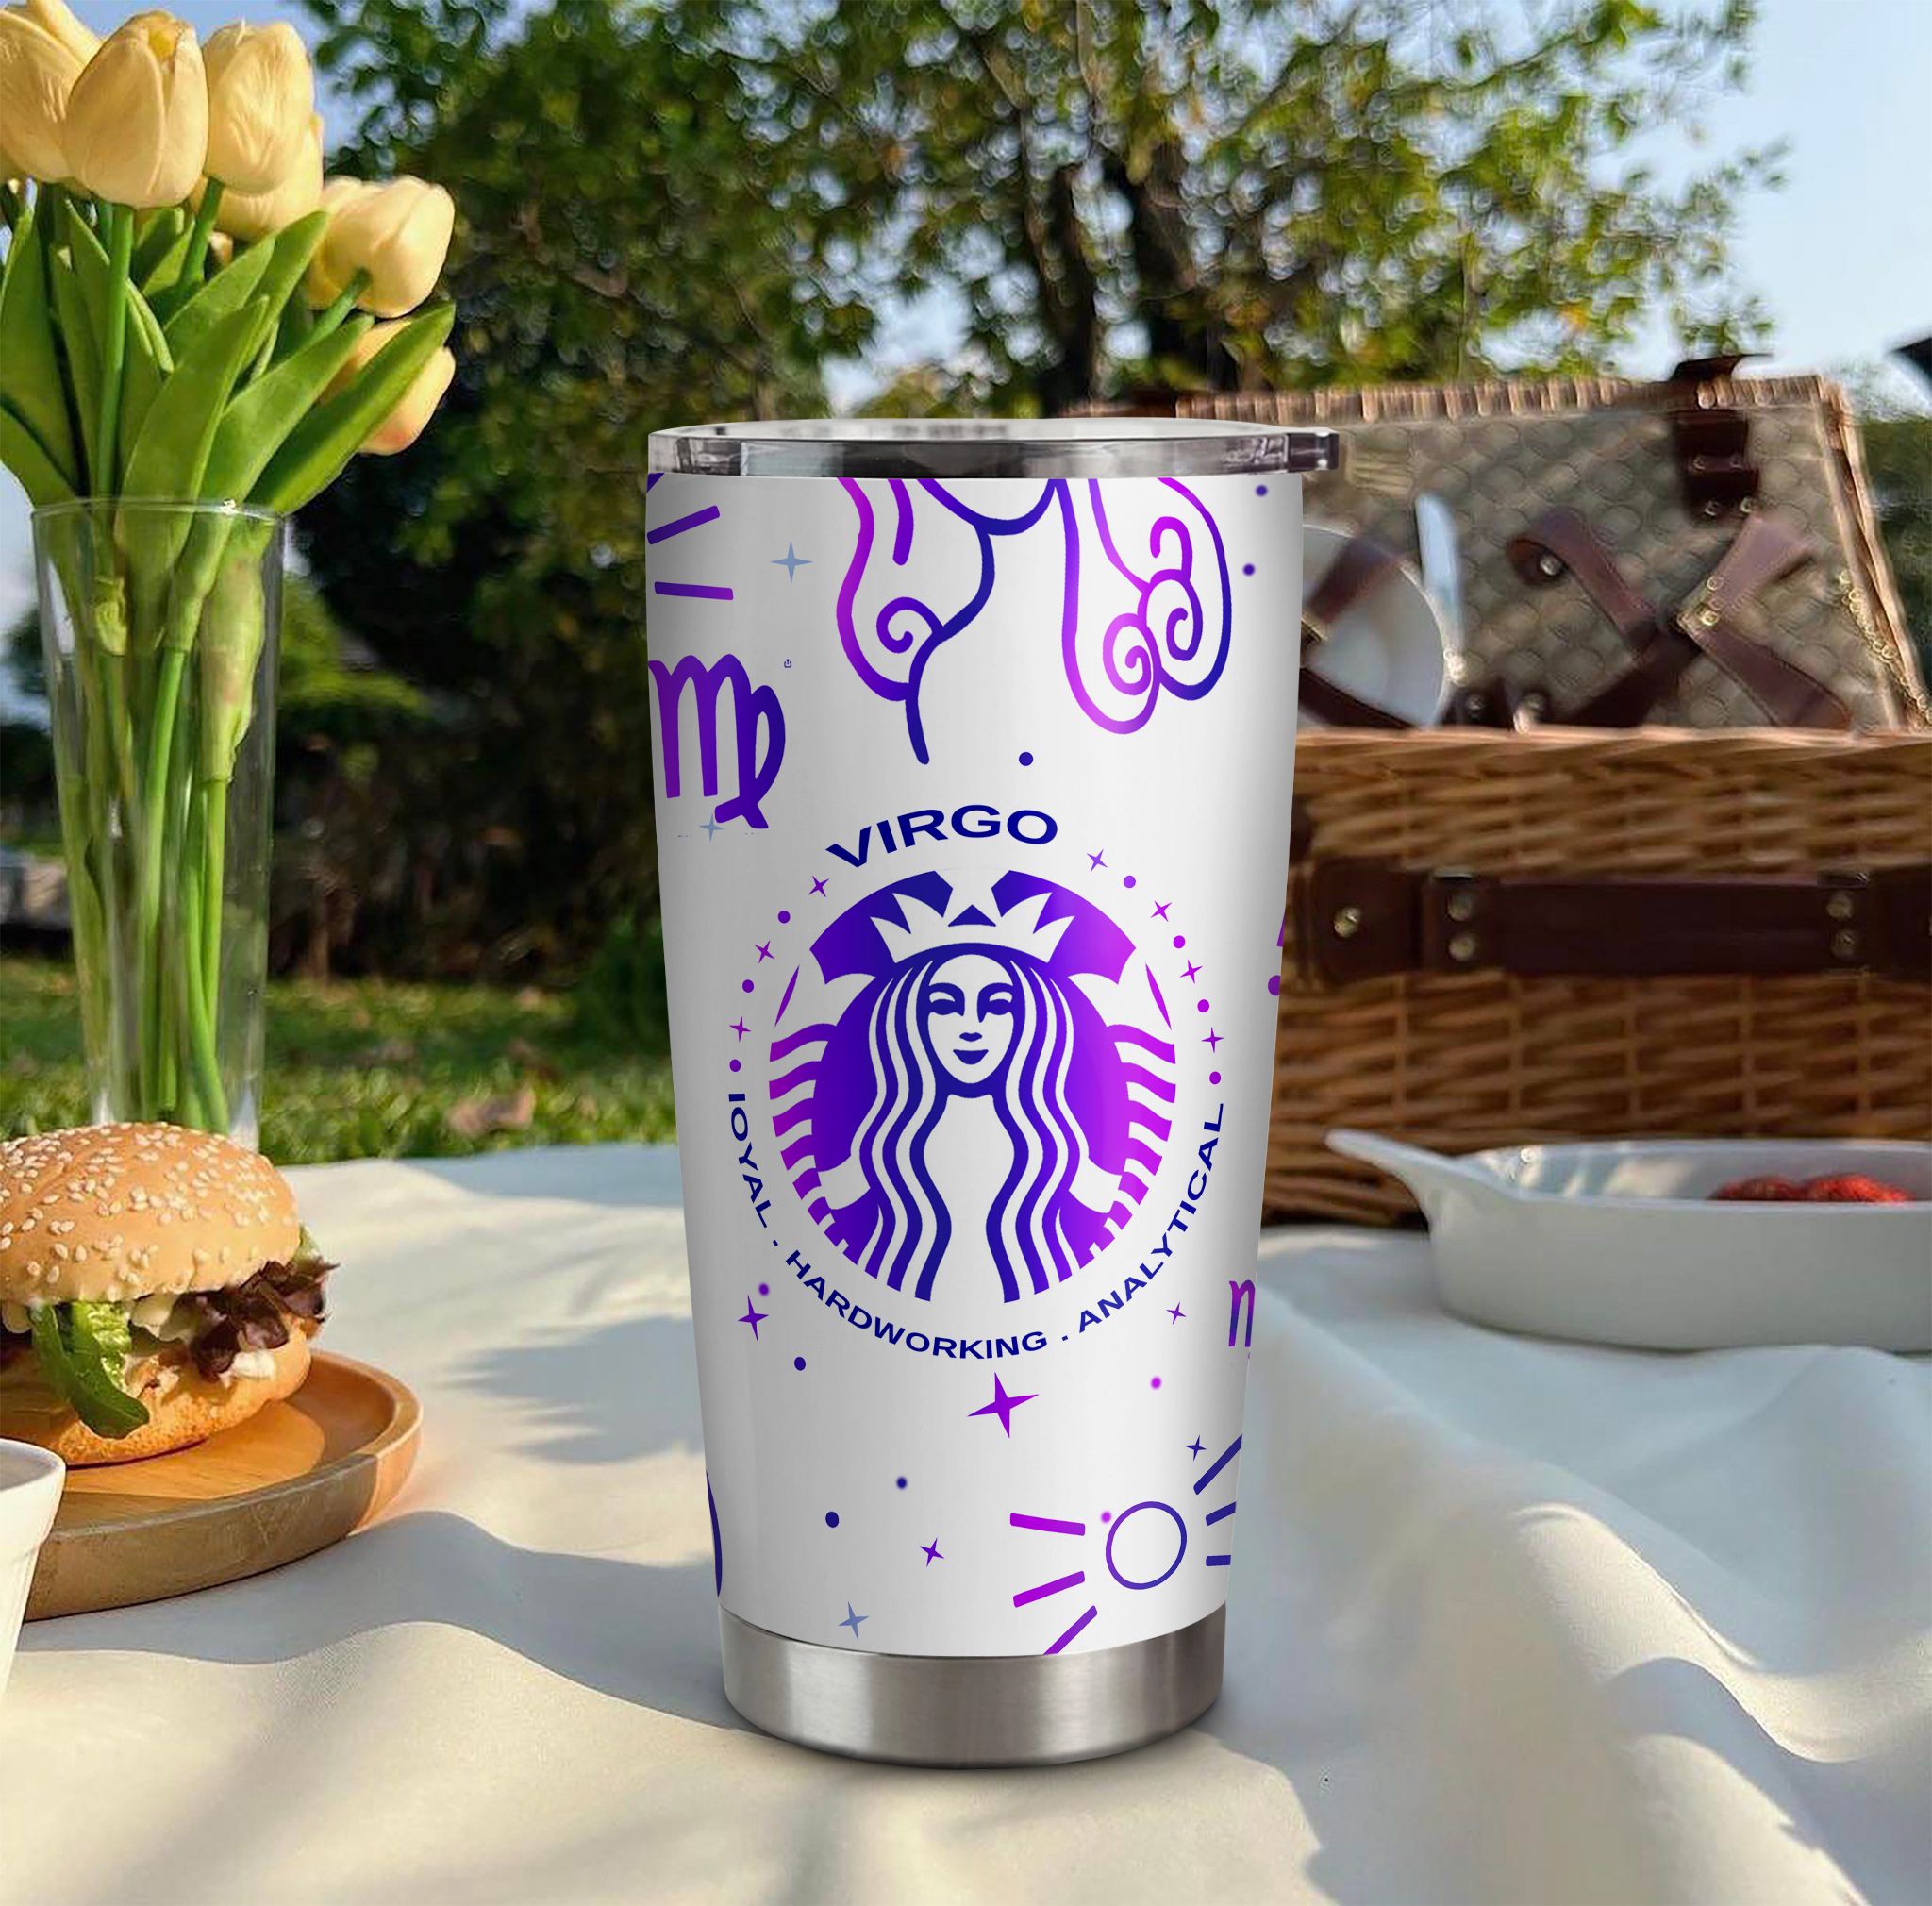  Starbuck và Cung Hoàng Đạo Virgo Go Drink Đồ Uống Cốc giữ nhiệt 600ml In tên, hình ảnh theo yêu cầu 